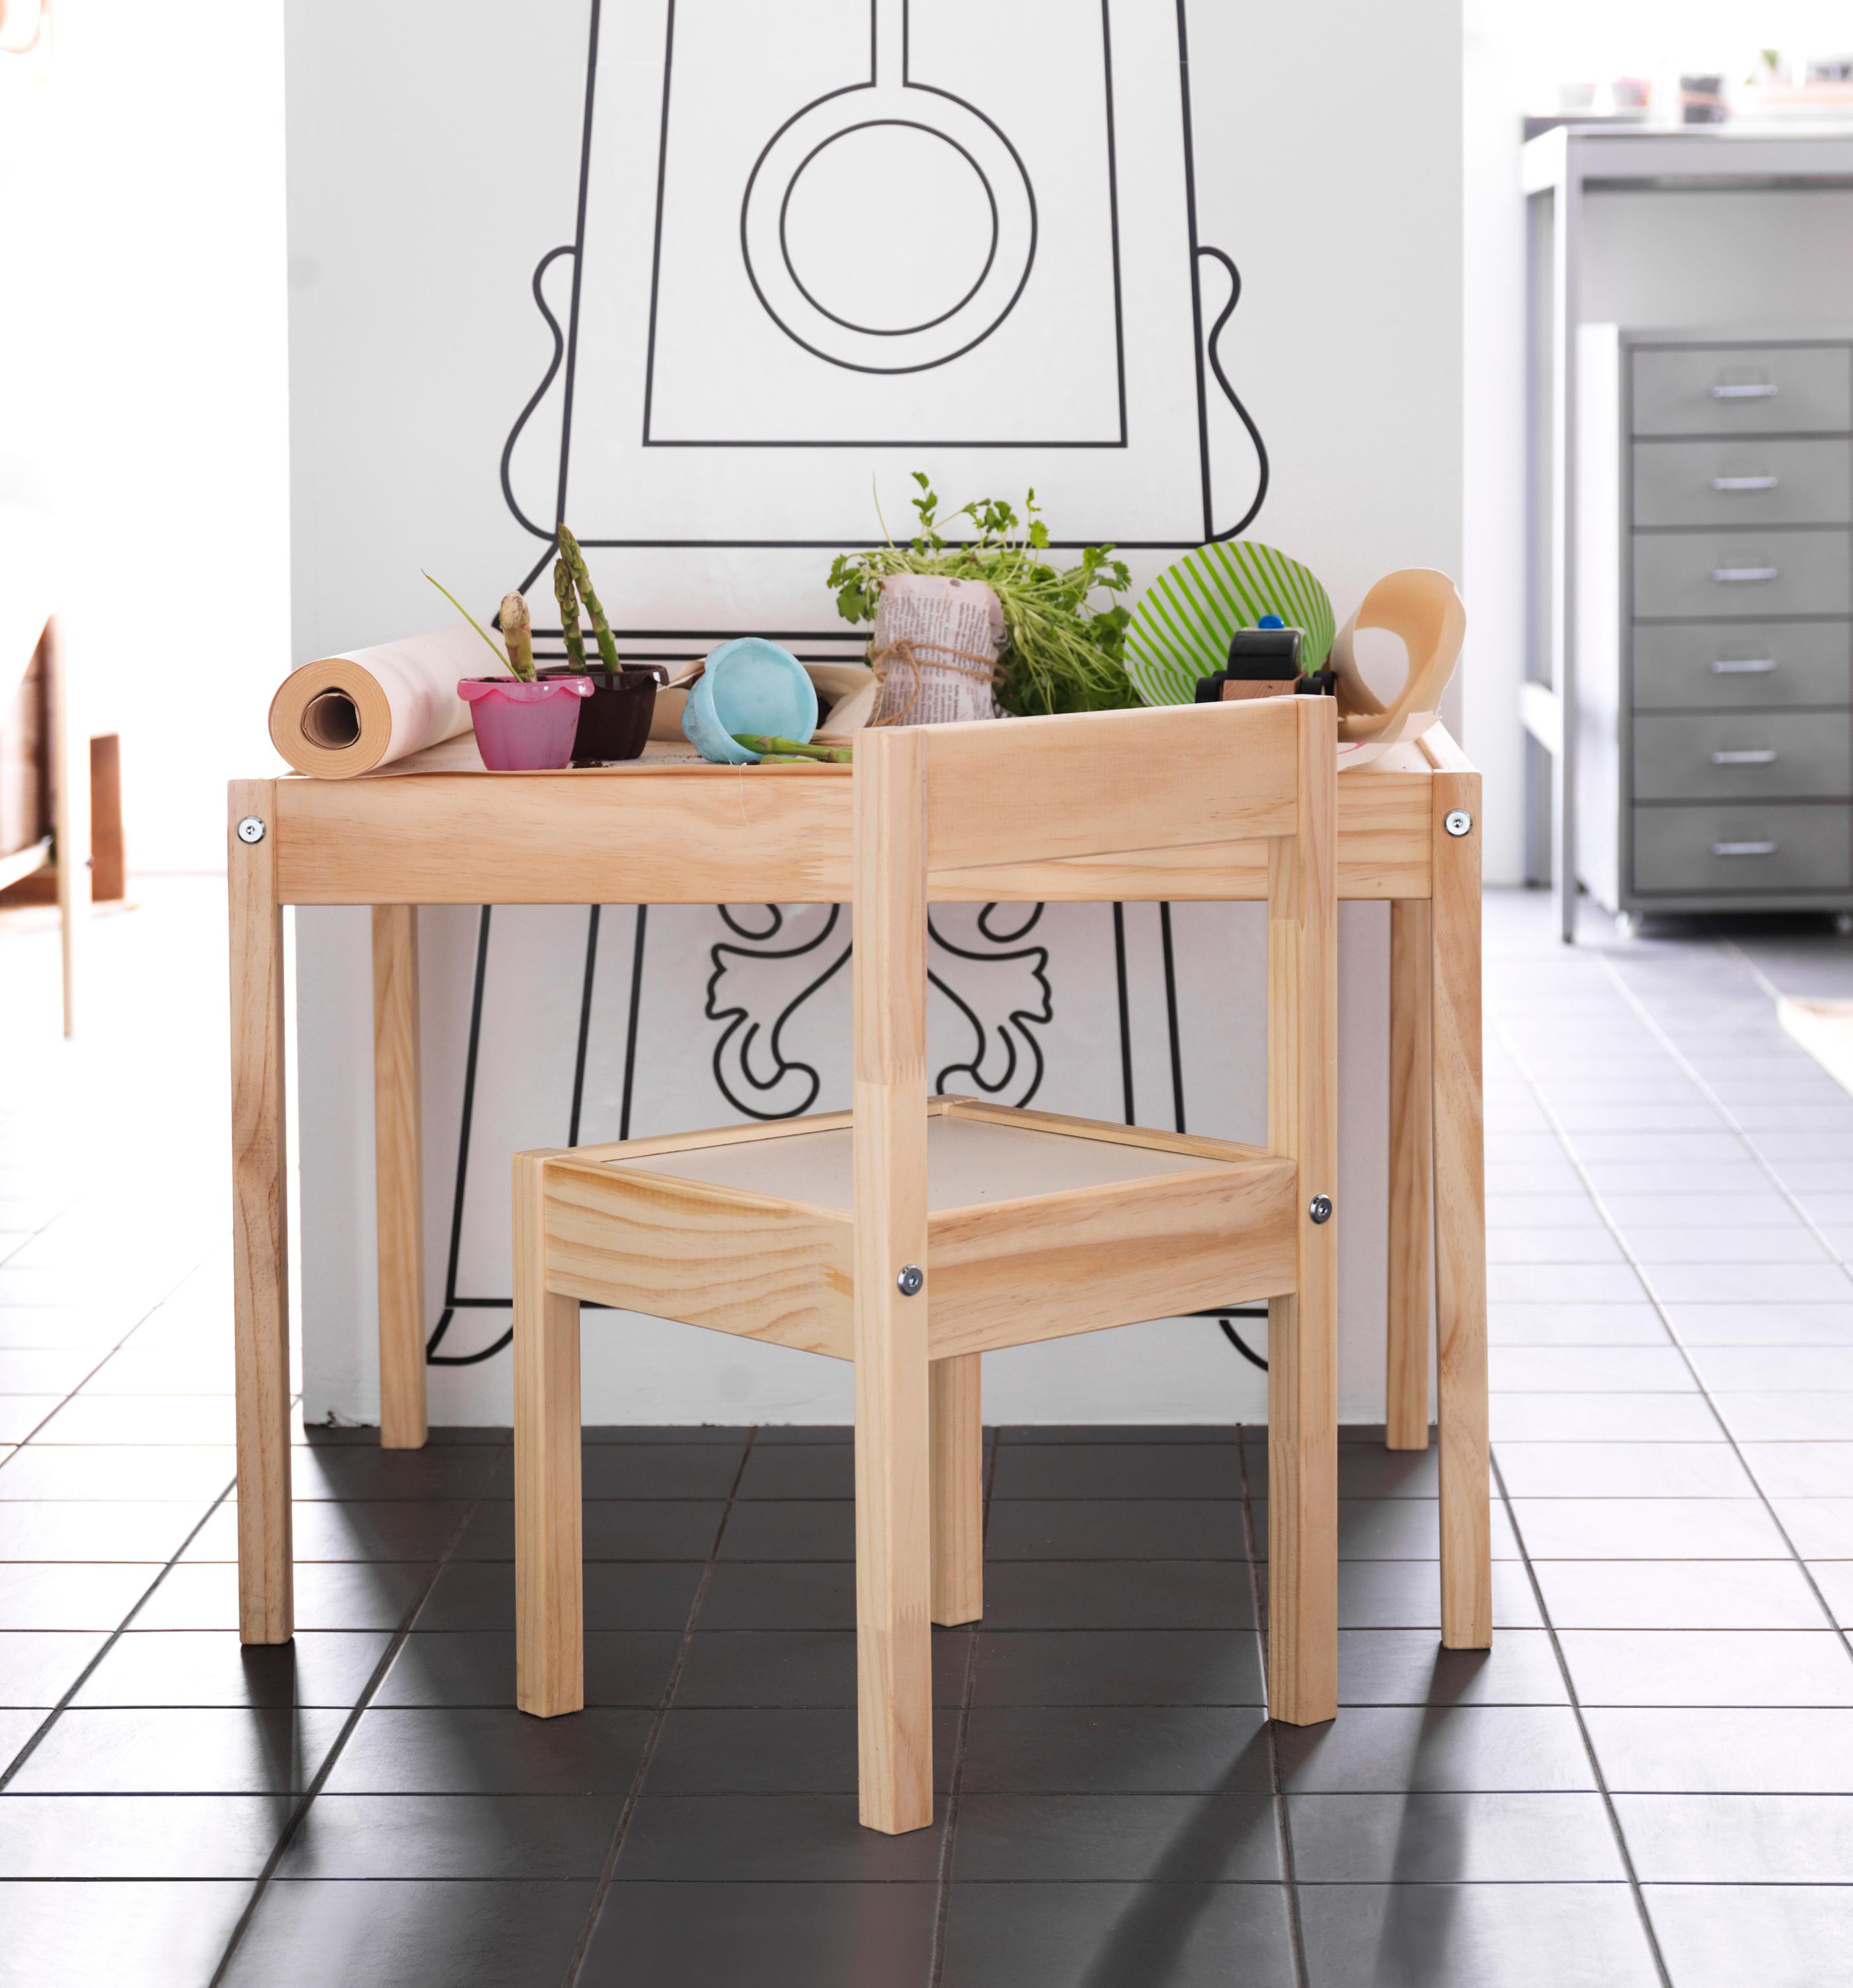 Kindertisch in der Küche #ikea ©Inter IKEA Systems B.V.